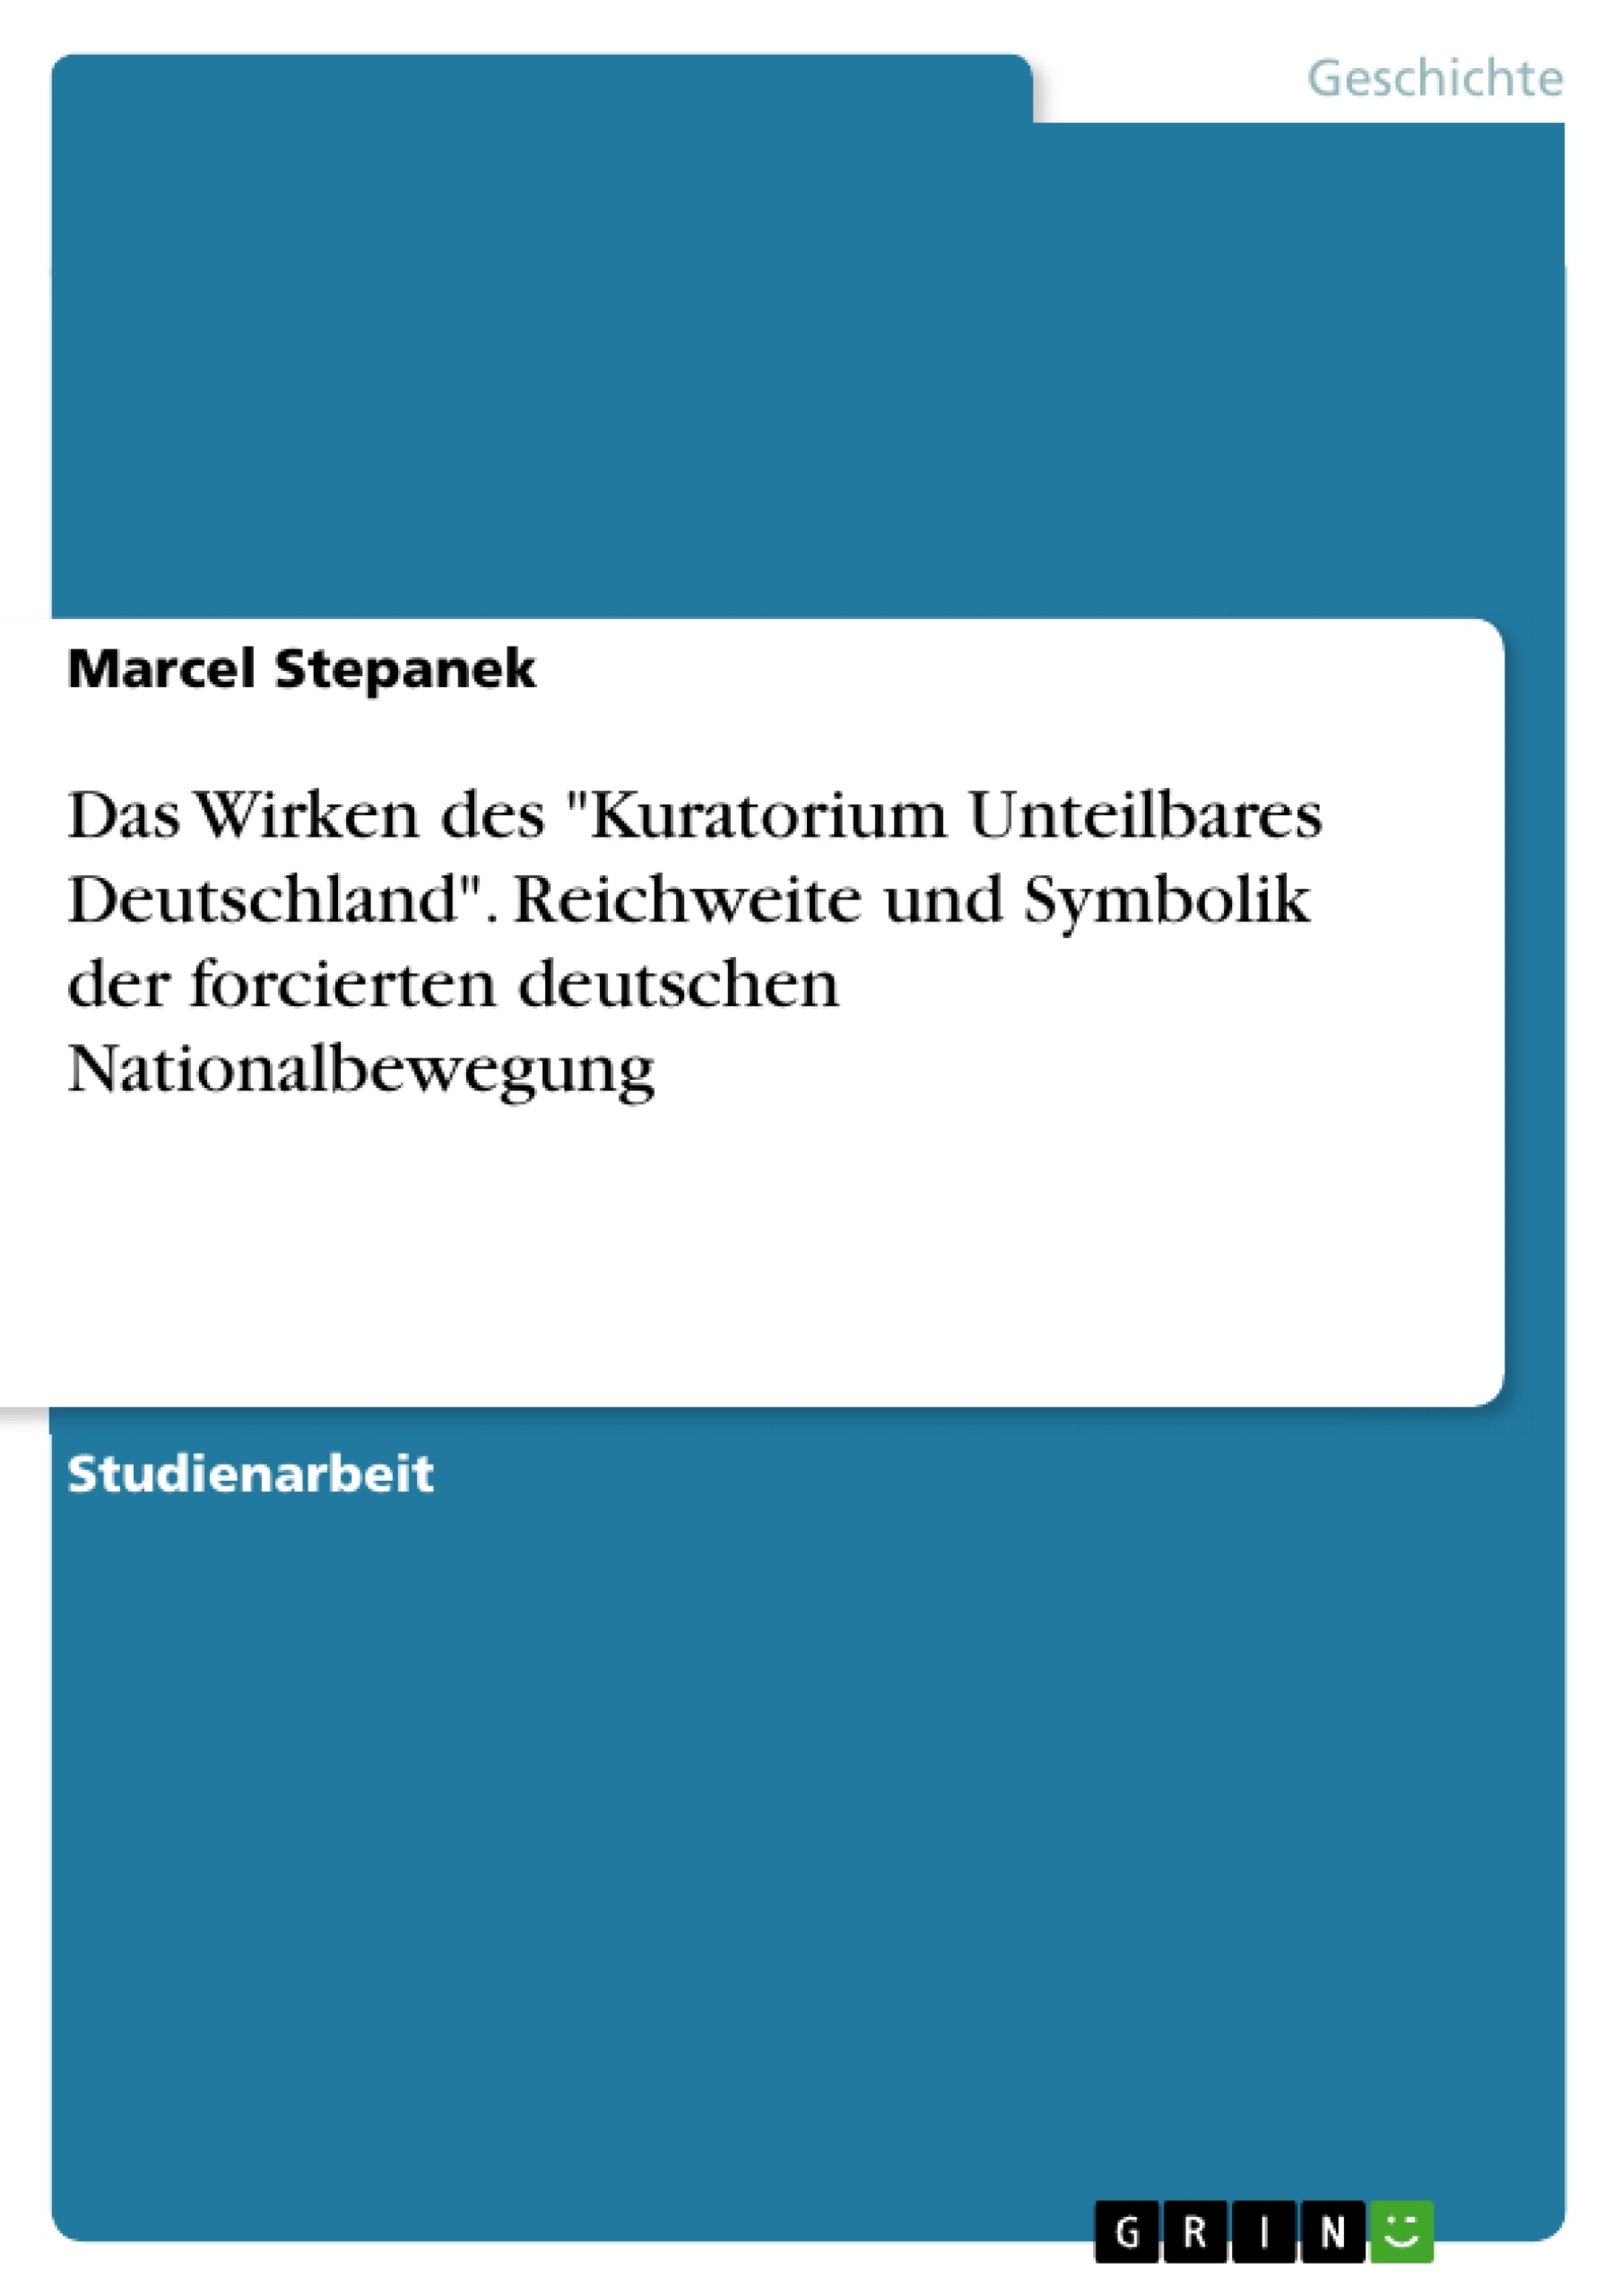 Título: Das Wirken des "Kuratorium Unteilbares Deutschland". Reichweite und Symbolik der forcierten deutschen Nationalbewegung